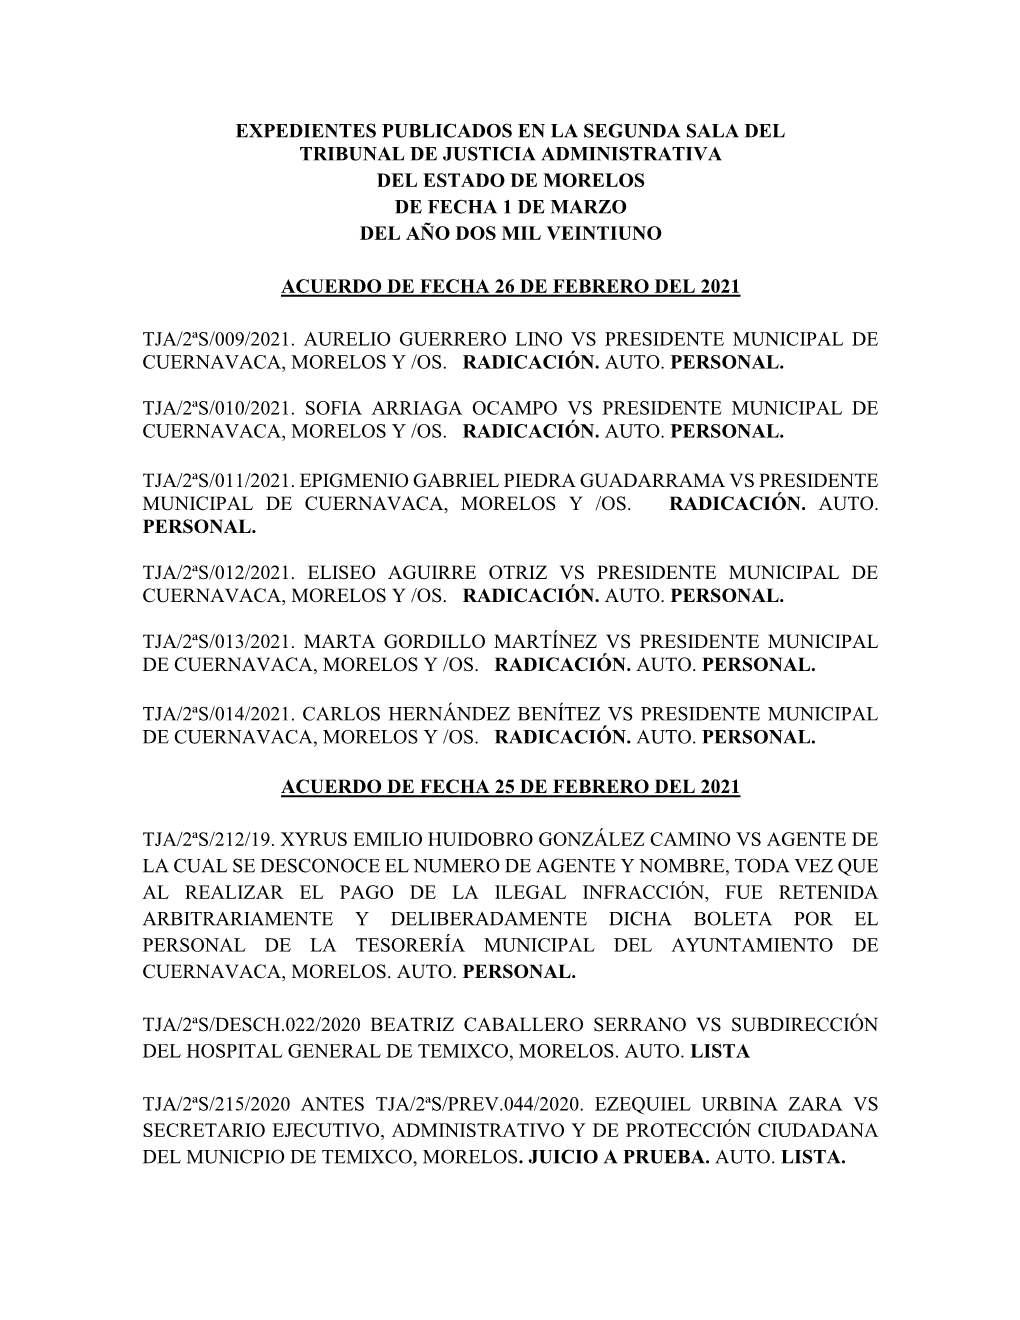 Expedientes Publicados En La Segunda Sala Del Tribunal De Justicia Administrativa Del Estado De Morelos De Fecha 1 De Marzo Del Año Dos Mil Veintiuno